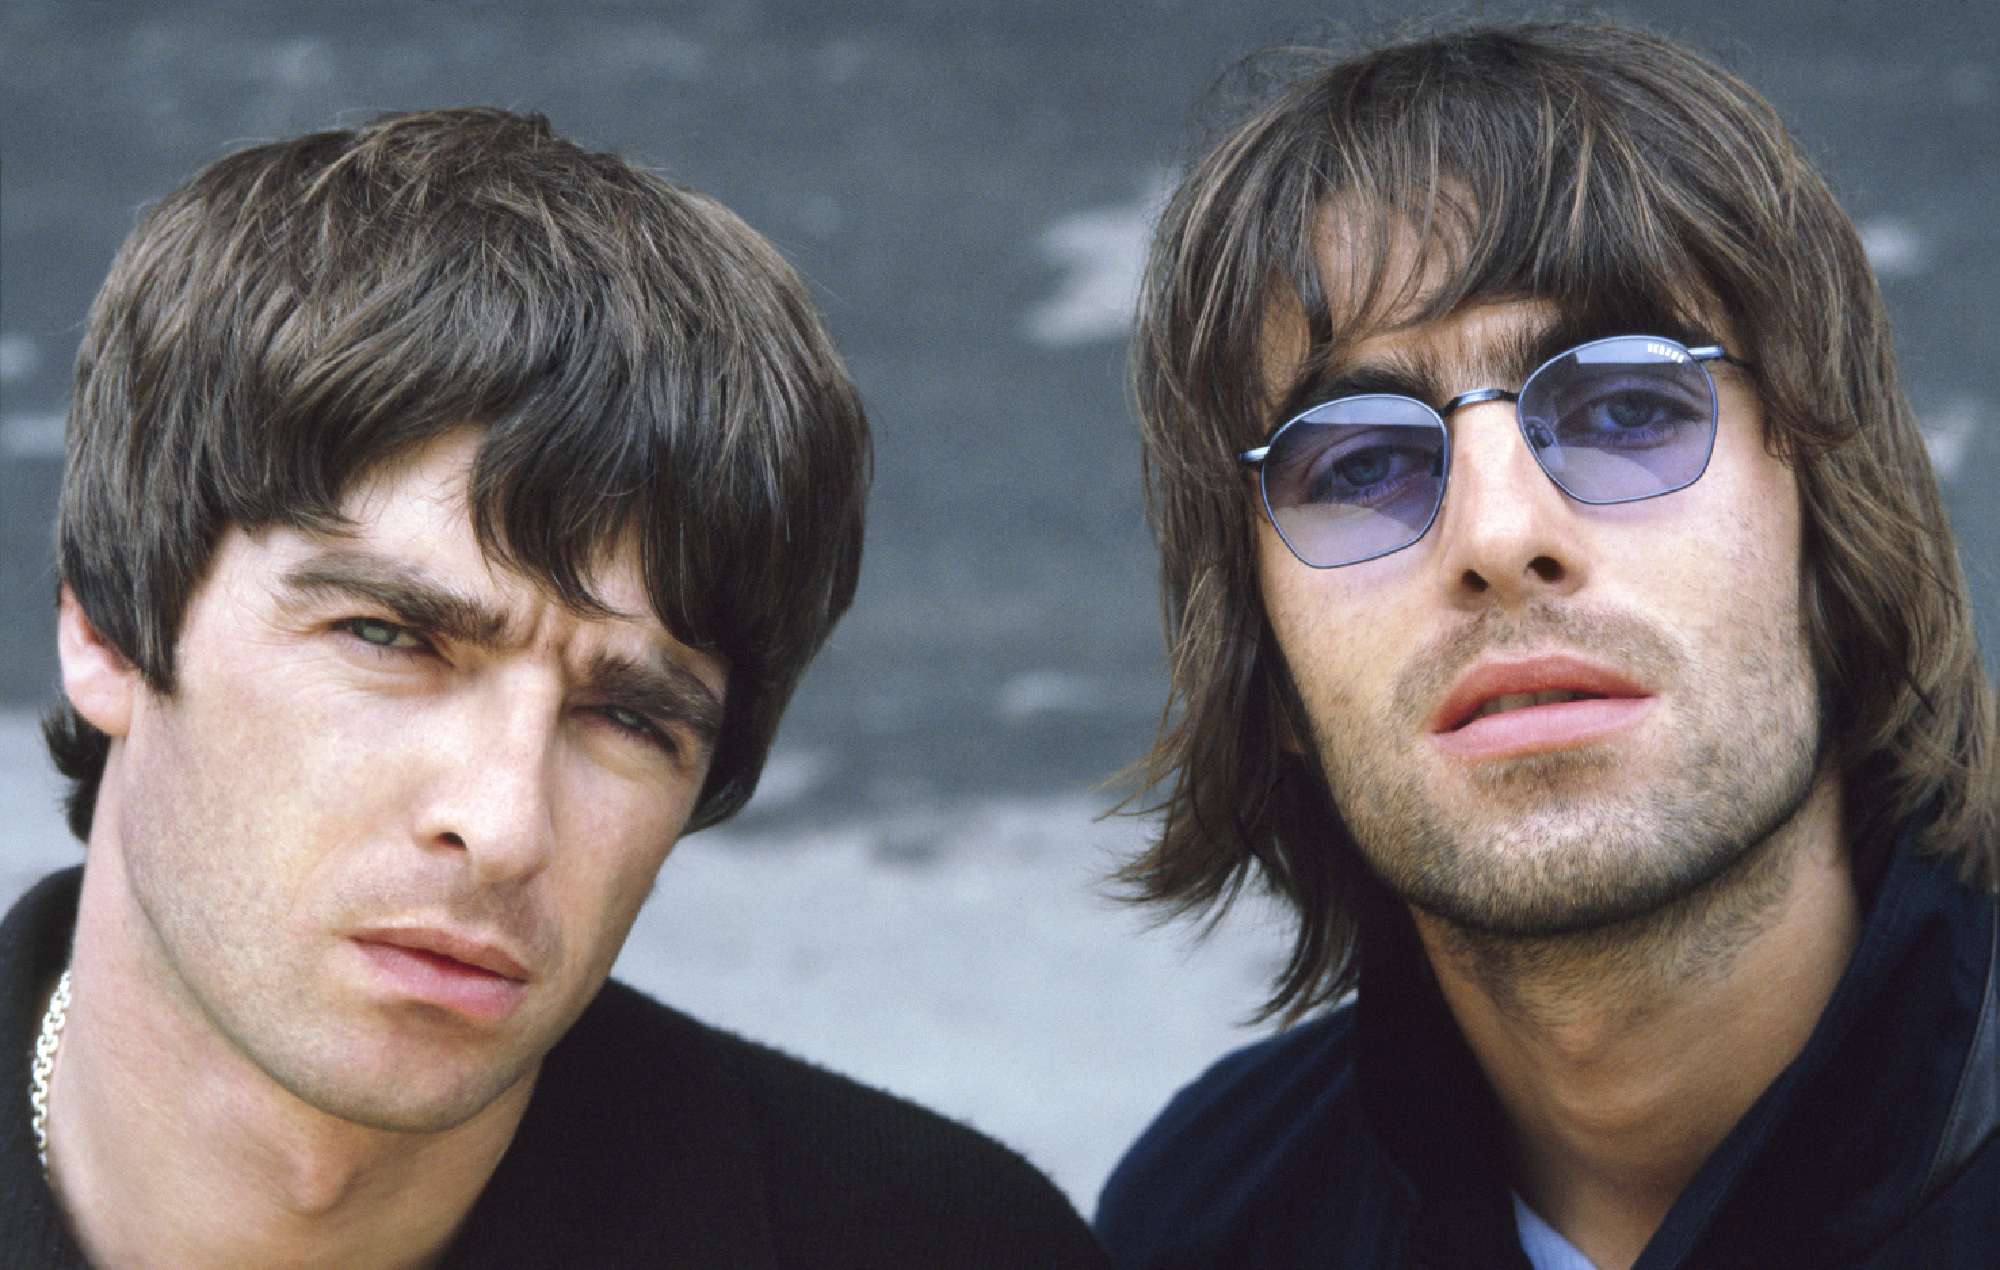 ¿Reunión o reedición? Los fans se emocionan con el nuevo teaser de Oasis